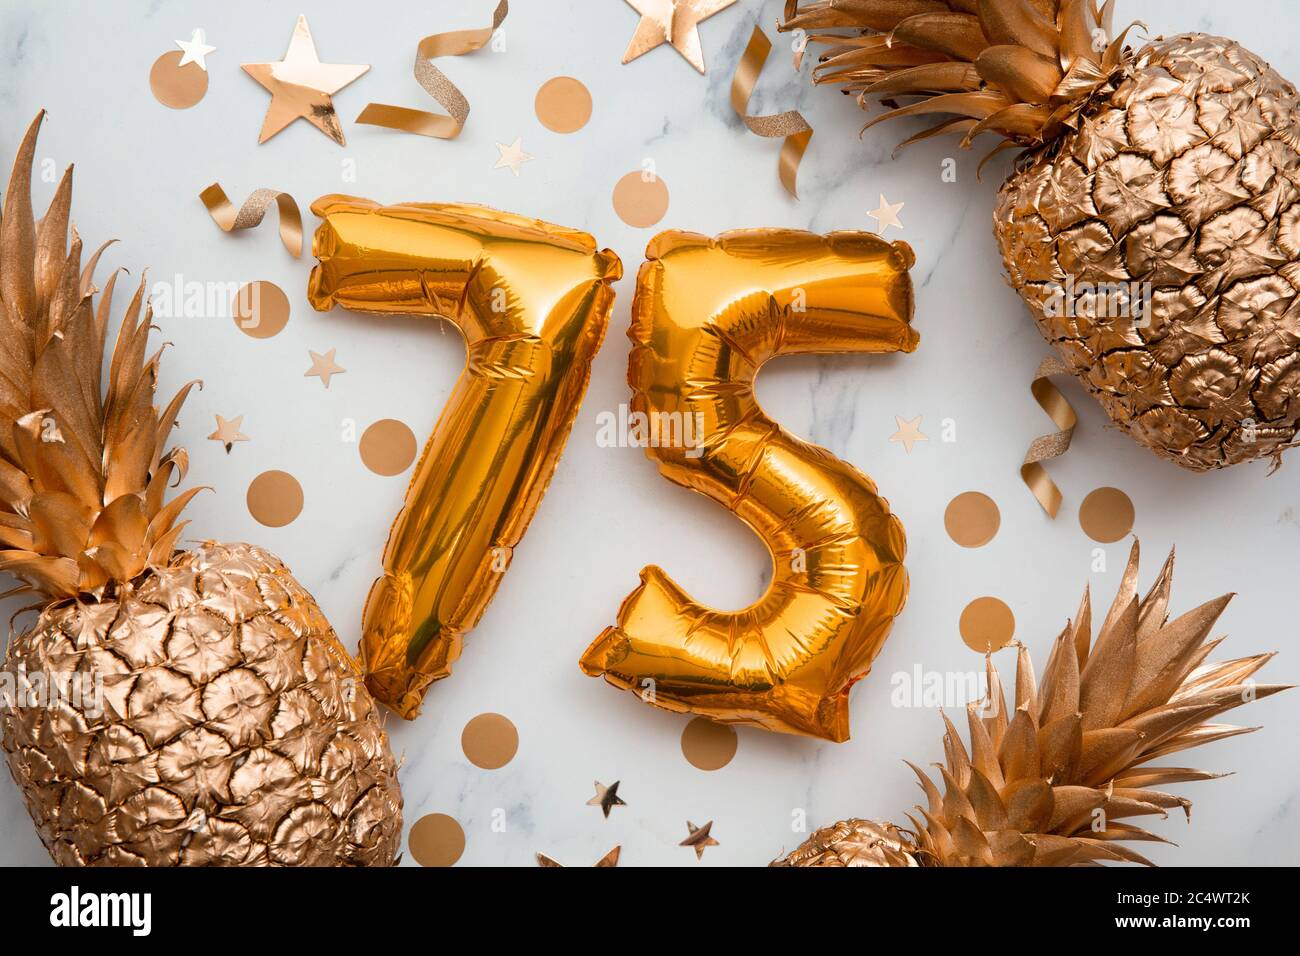 carte de célébration du 75e anniversaire avec ballons dorés et ananas dorés Banque D'Images